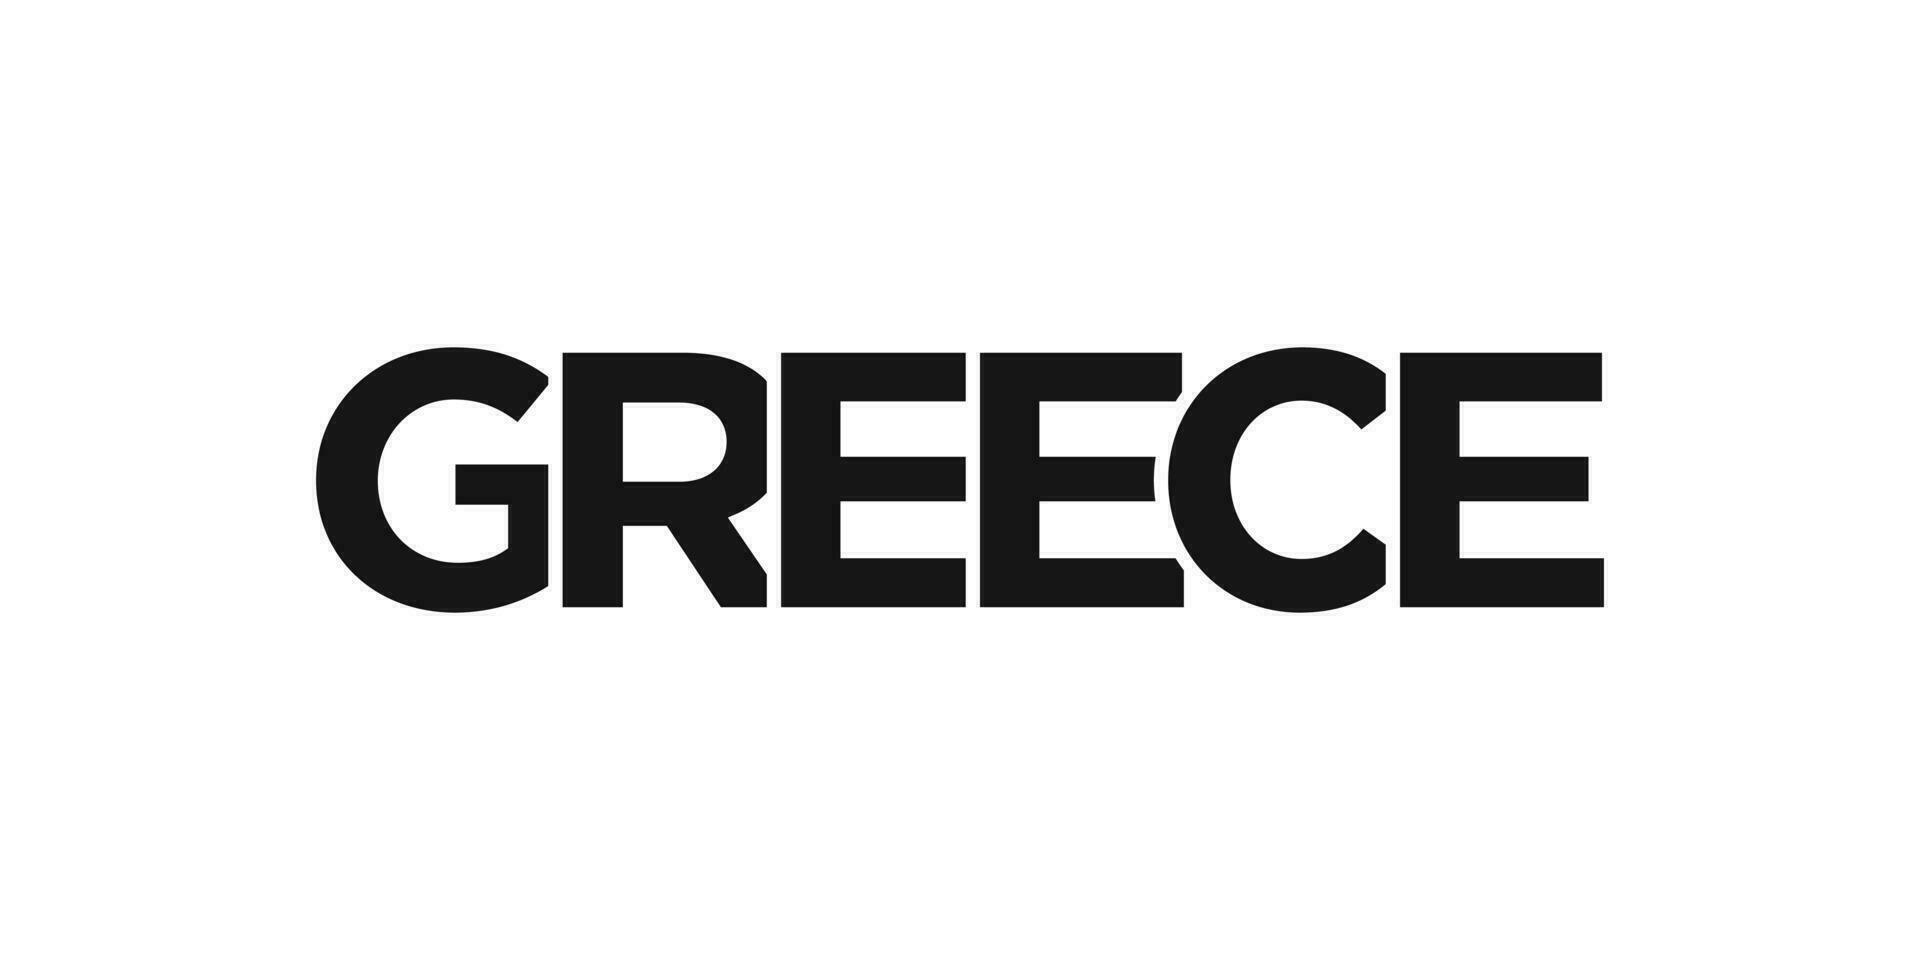 Grecia emblema. el diseño caracteristicas un geométrico estilo, vector ilustración con negrita tipografía en un moderno fuente. el gráfico eslogan letras.